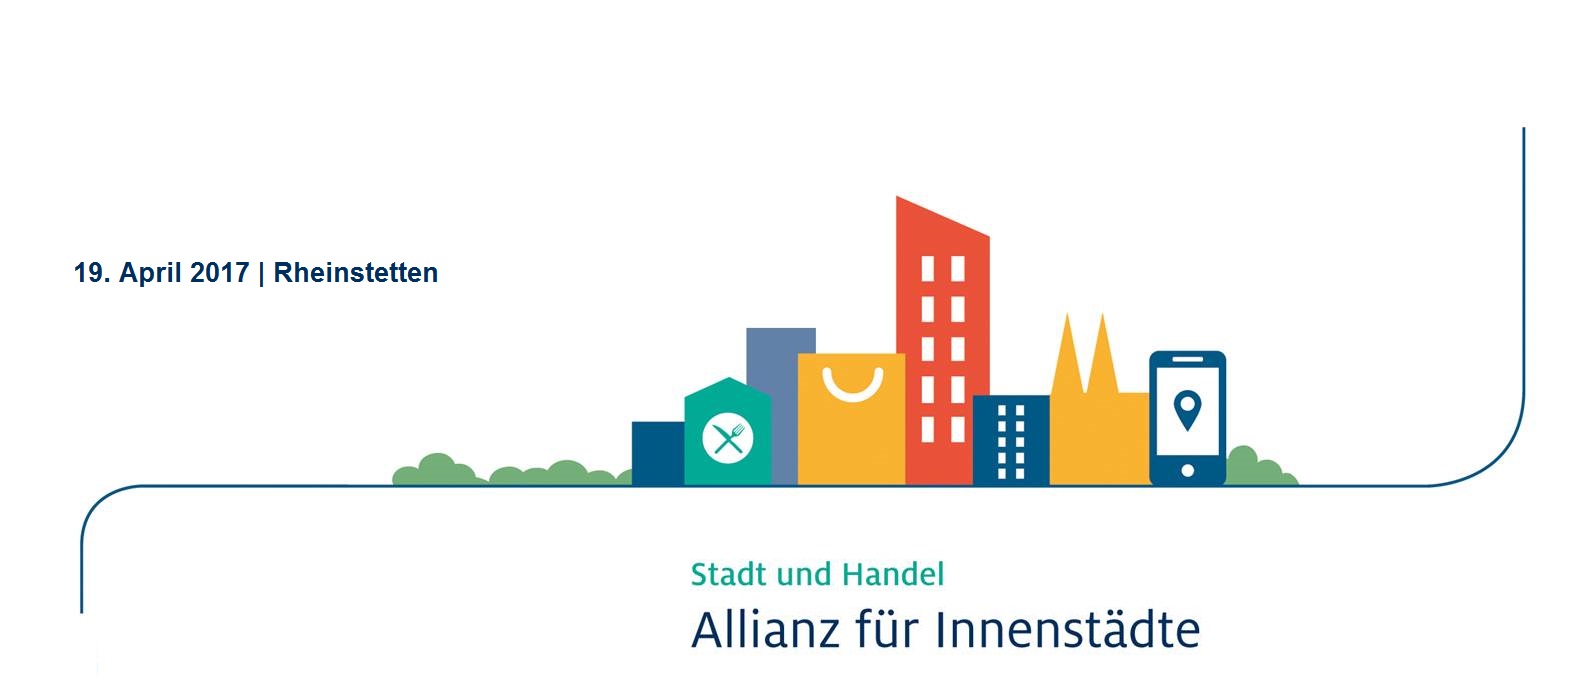 Allianz-Innenstadt-Logo-Rheinstetten